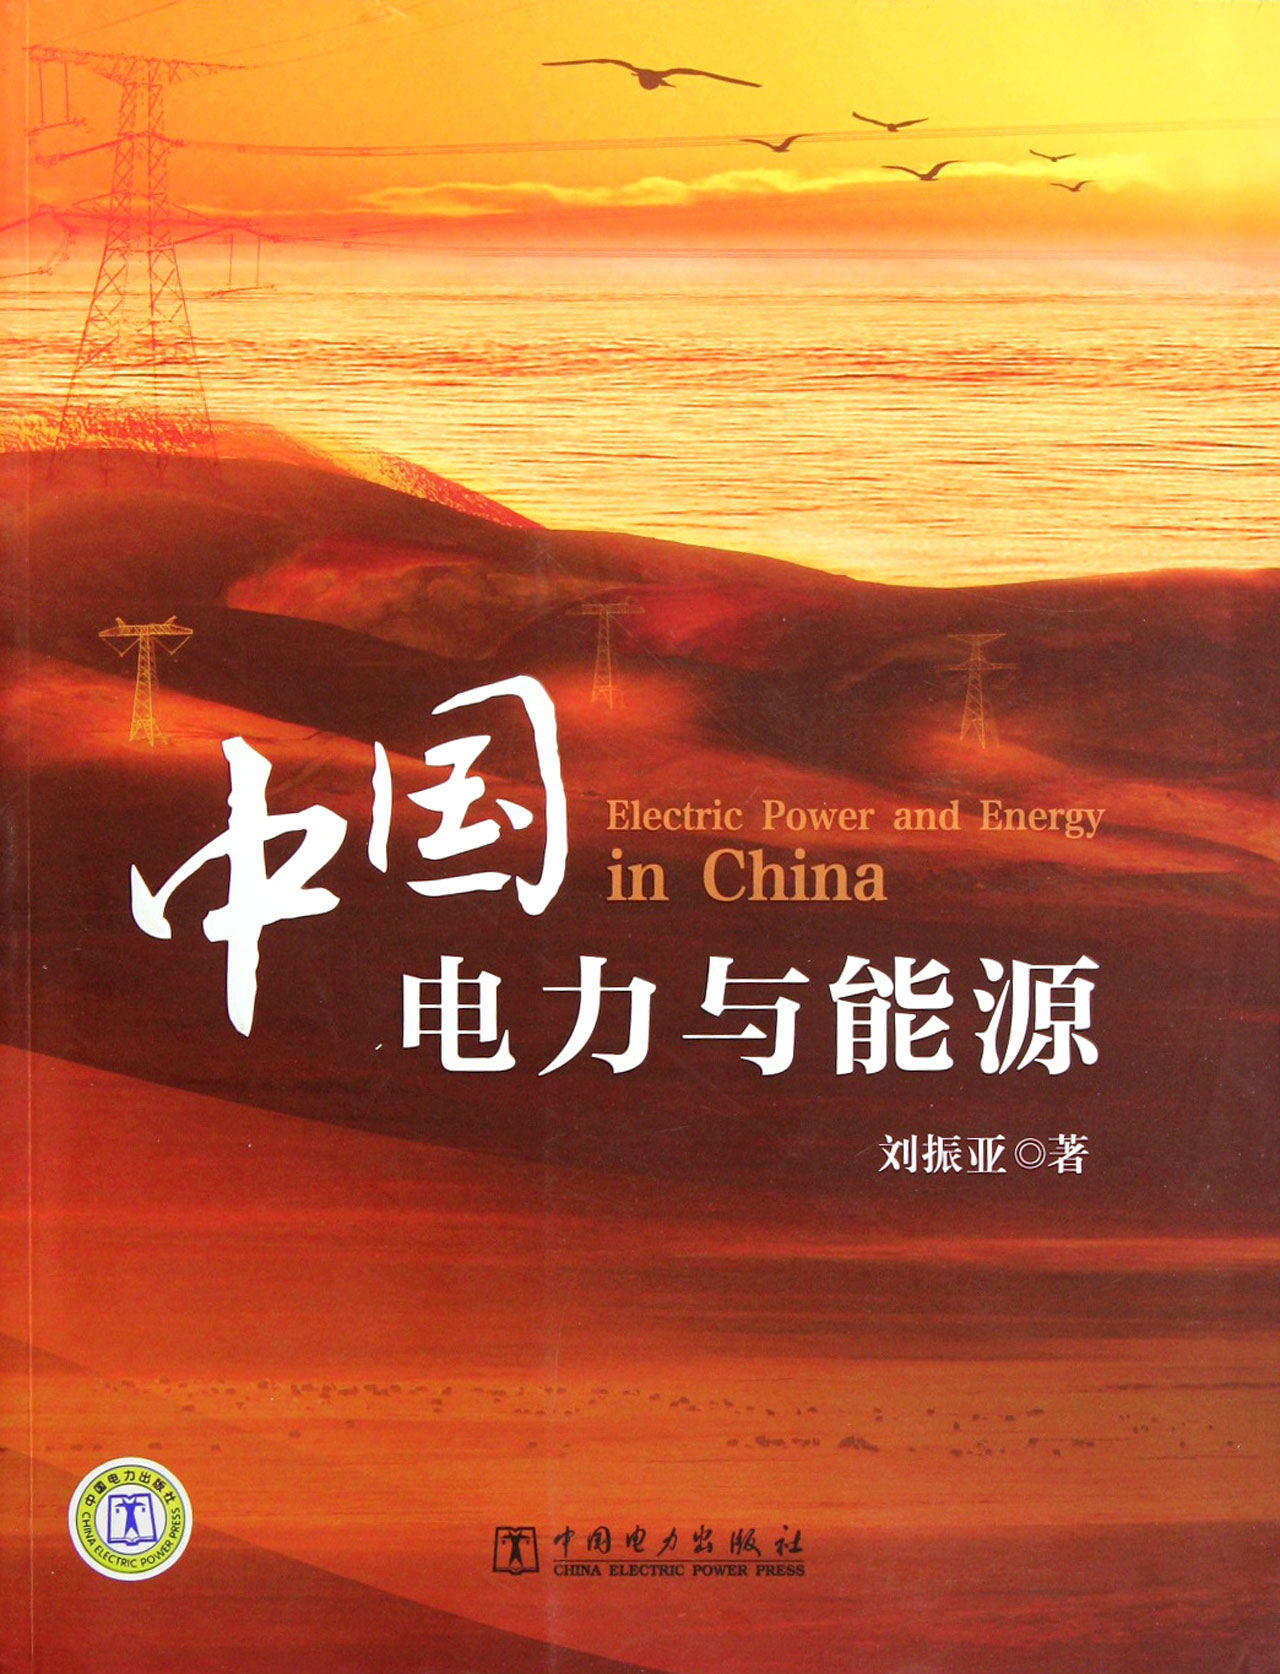 中国电力与能源 工业技术 刘振亚著 中国电力出版社 9787512326675 pdf格式下载